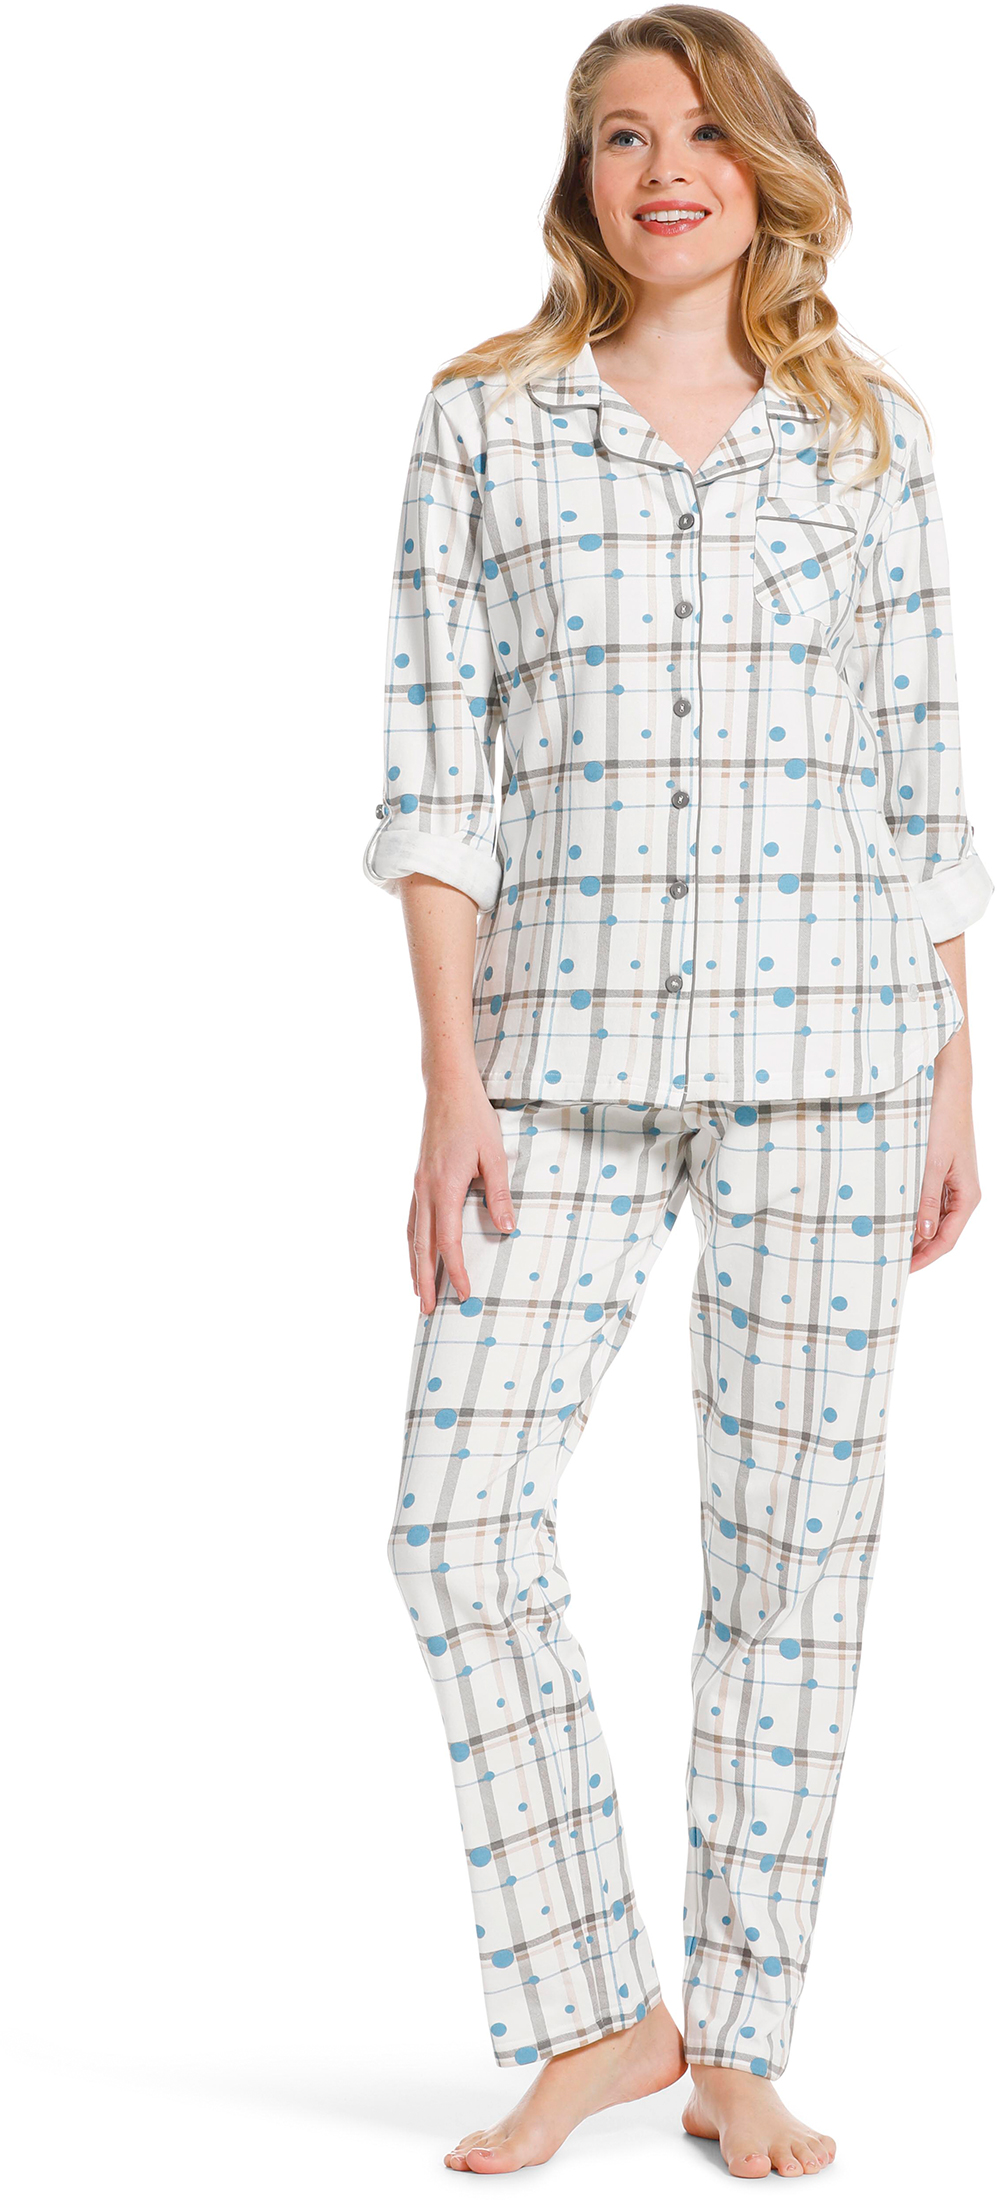 Pastunette dames doorknoop pyjama 20222-142-6-36